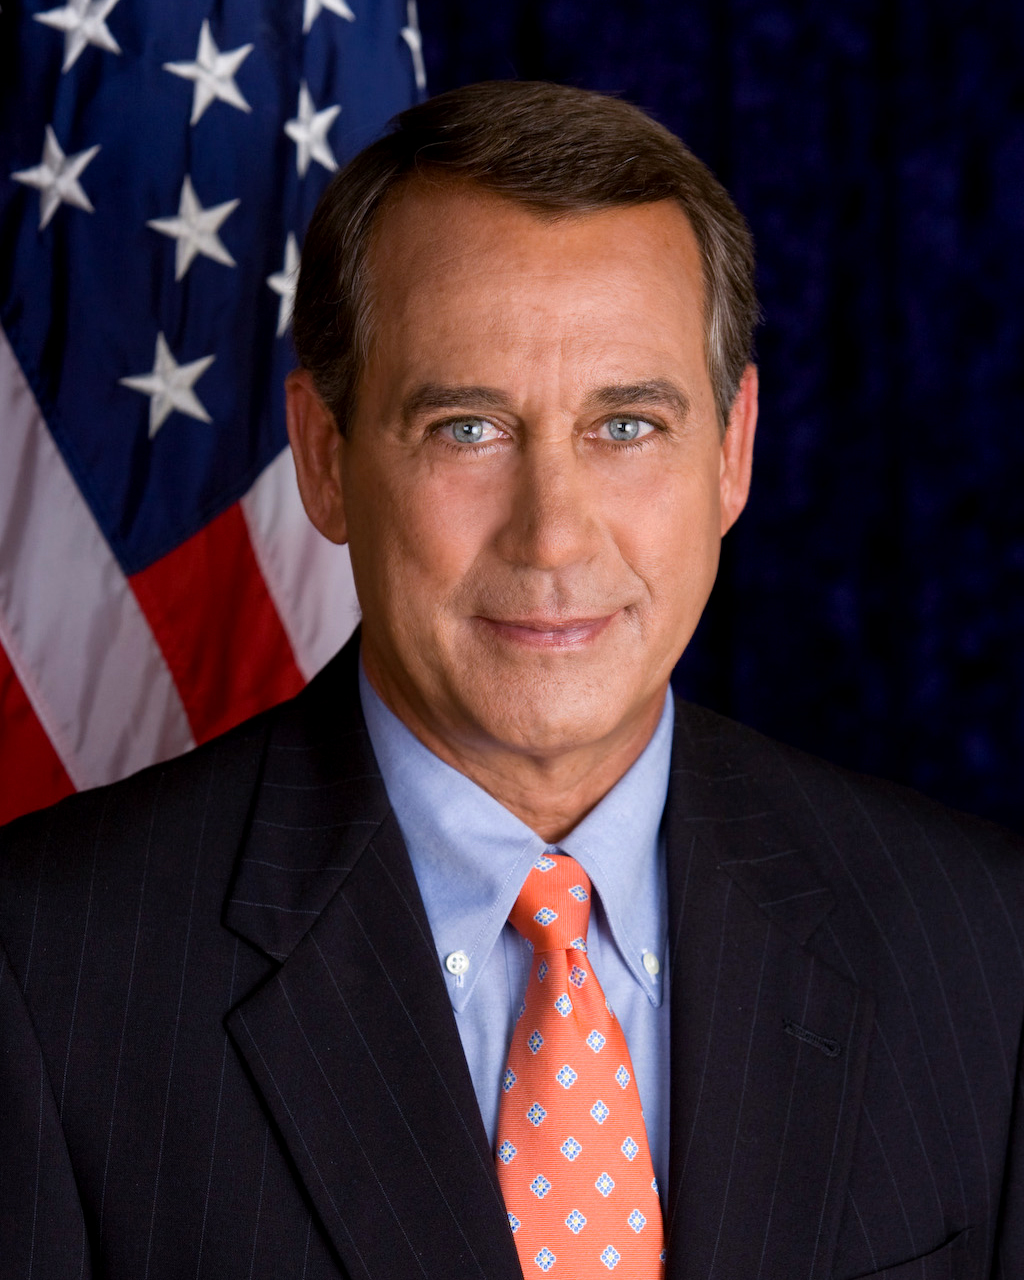 John_Boehner_official_portrait.jpg